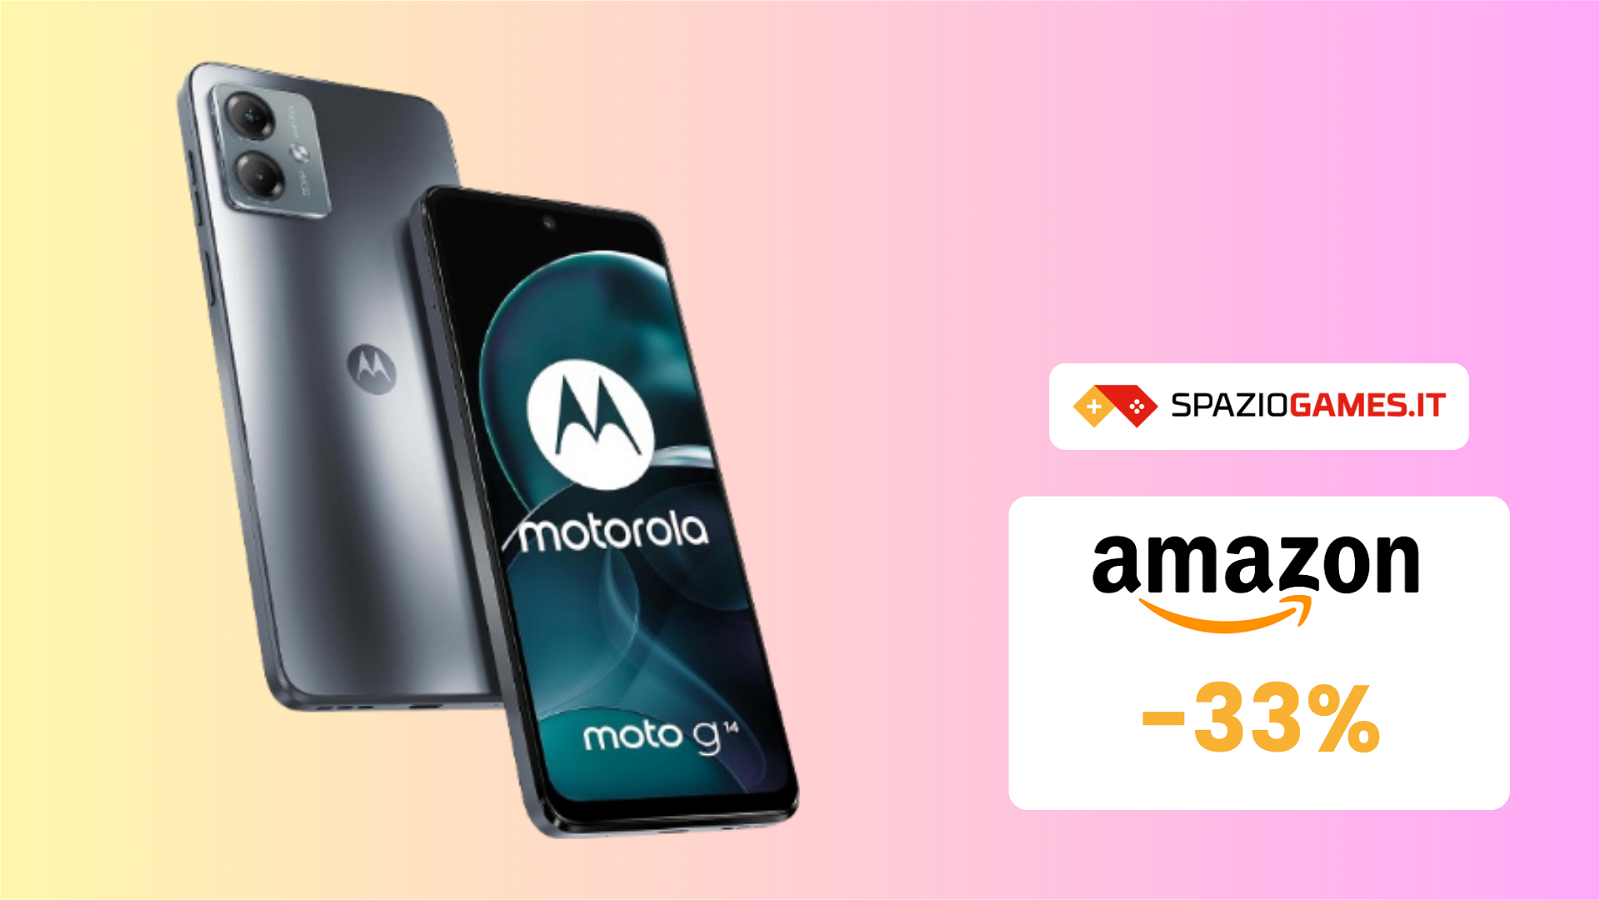 SUPER PREZZO! Ottimo smartphone Motorola oggi a MENO DI 100€!